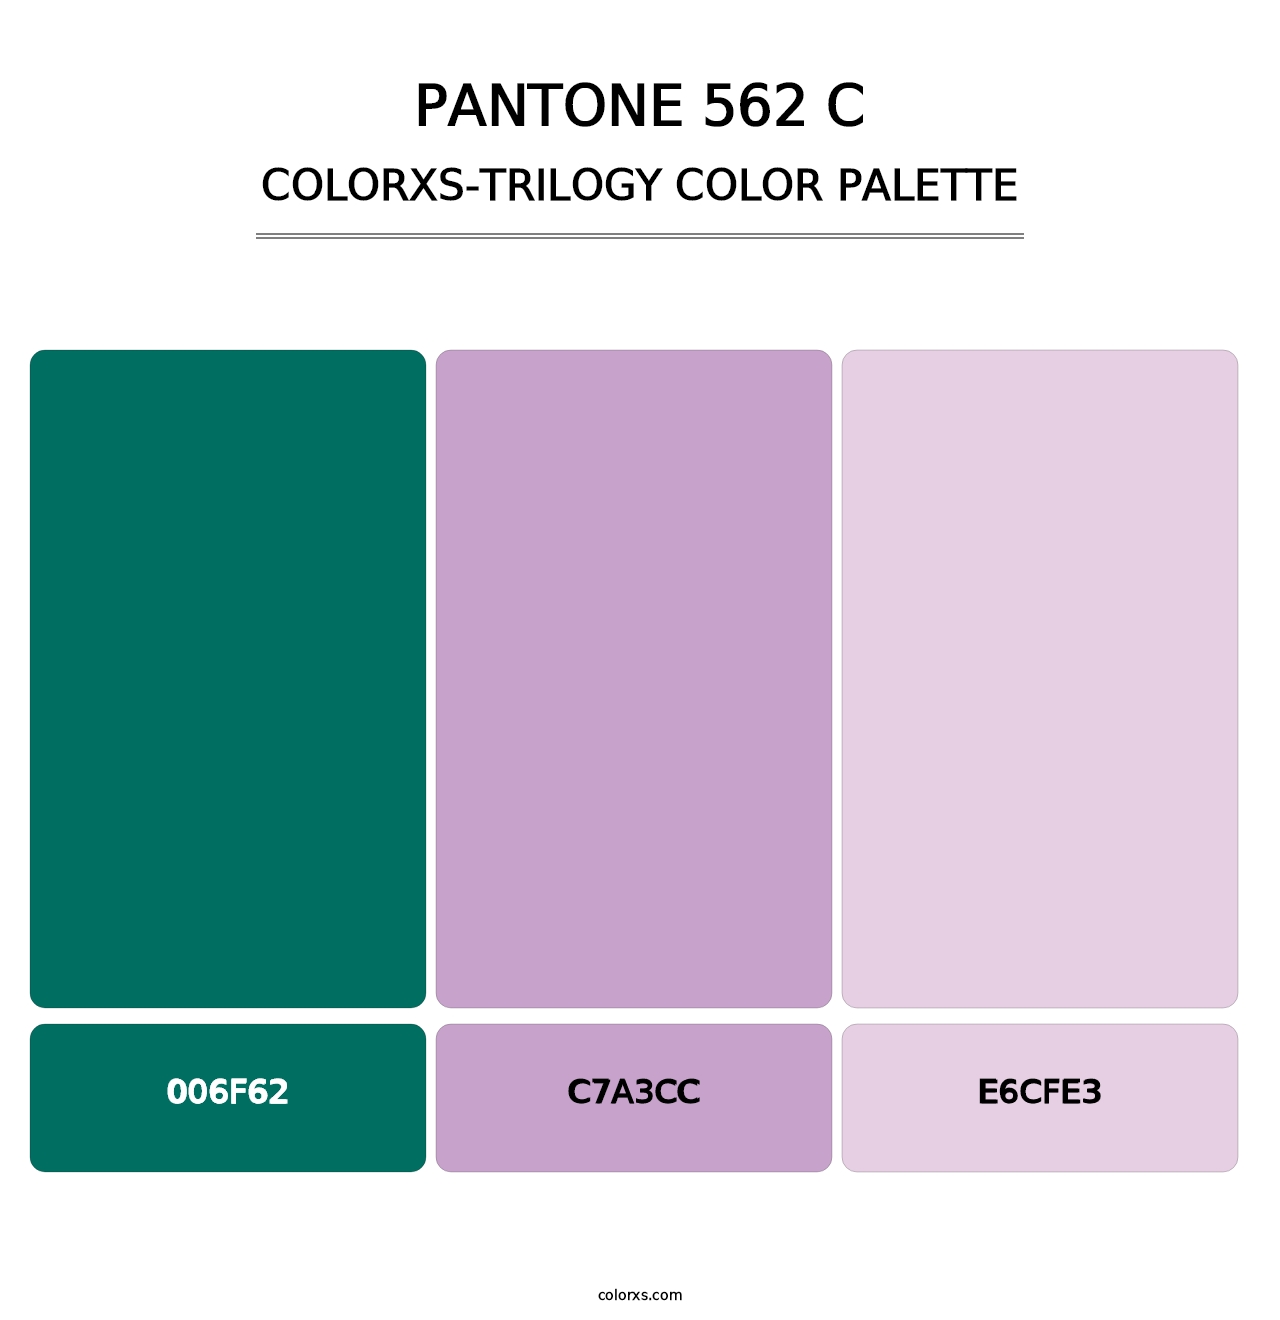 PANTONE 562 C - Colorxs Trilogy Palette